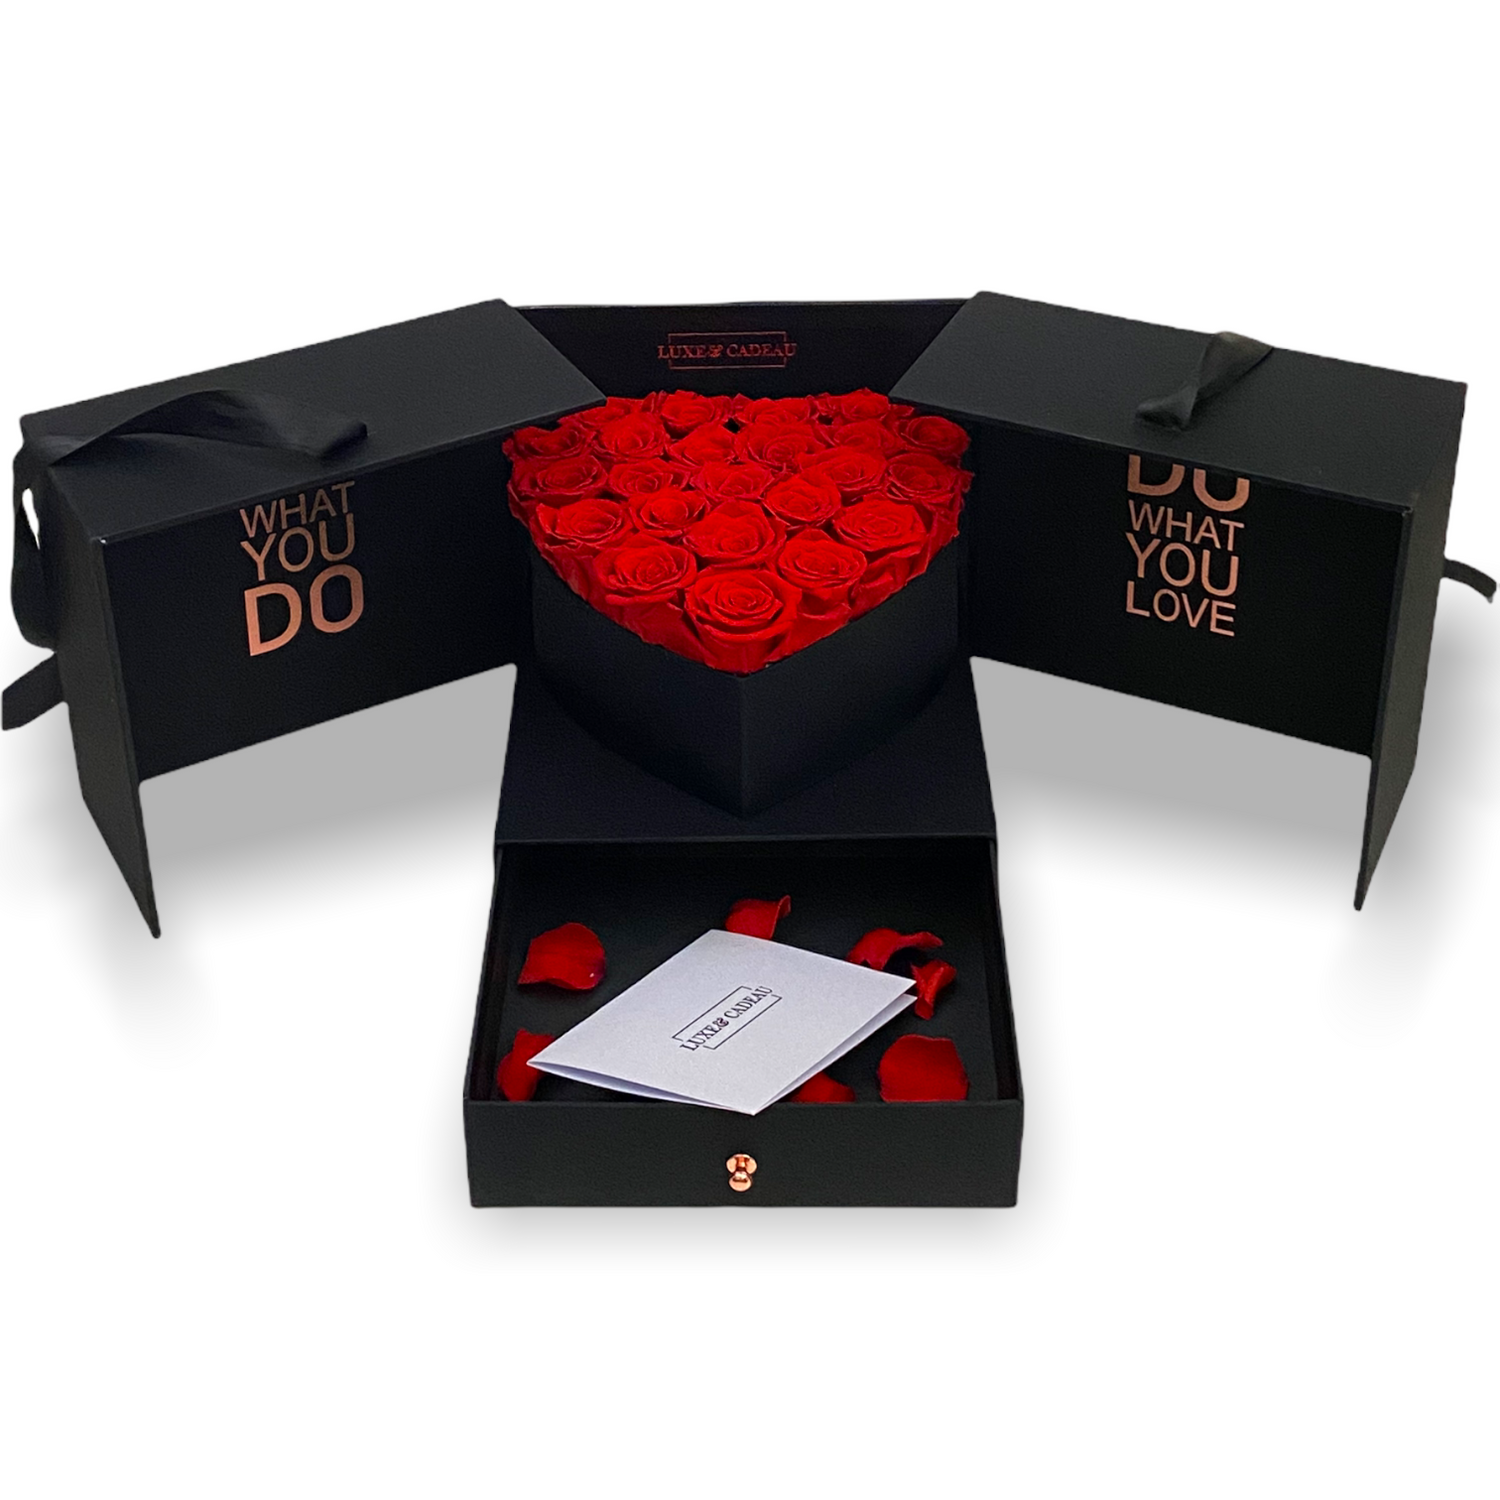 Roses & Chocolate Heart - Livraison de cadeaux aux EAU - Achetez en ligne !  – The Perfect Gift® Dubaï